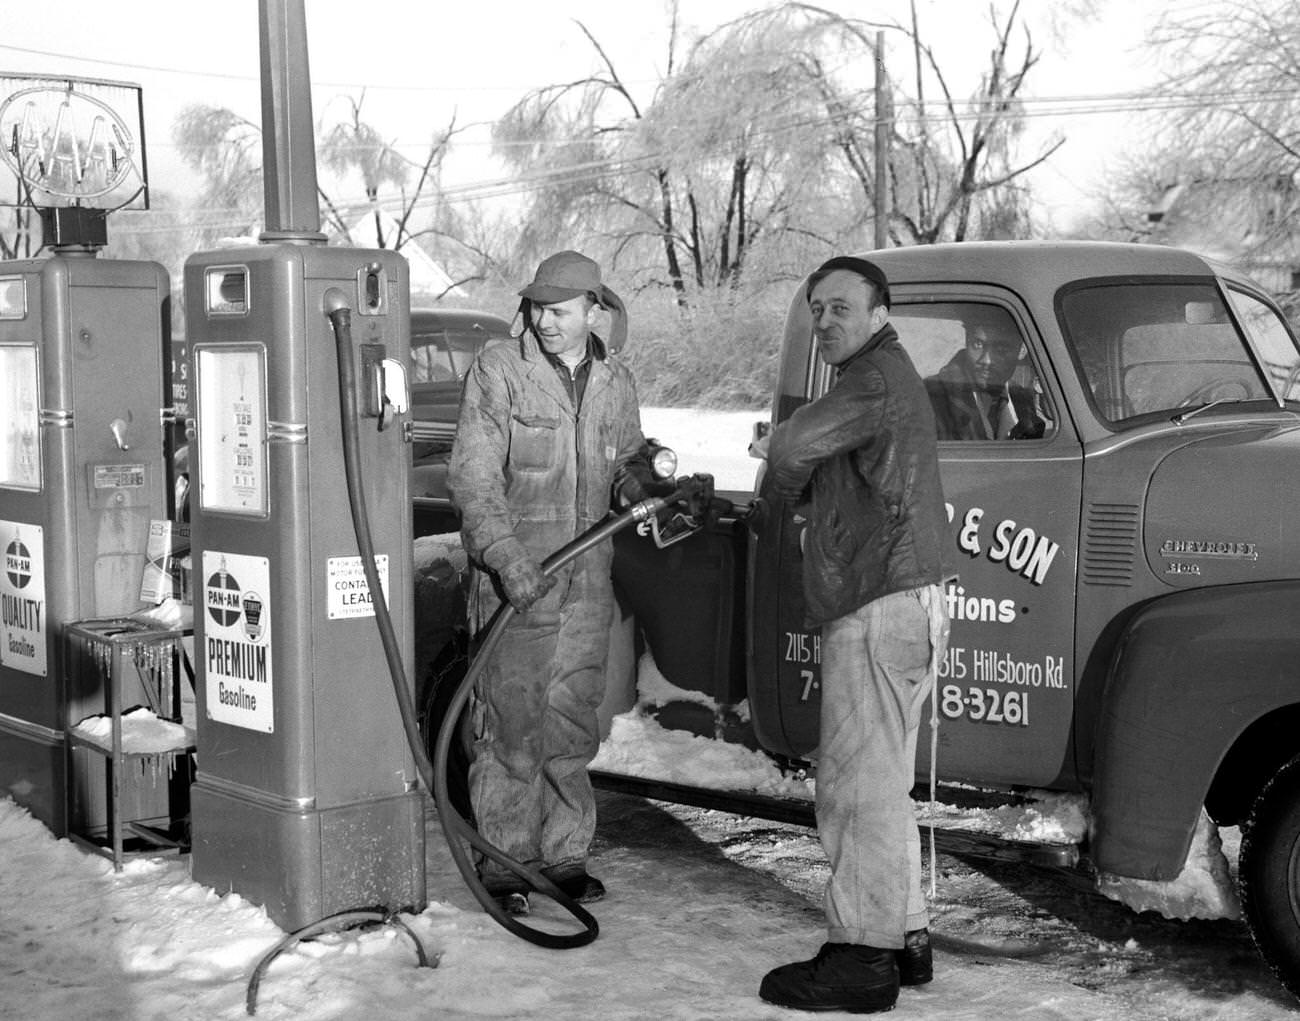 Pan Am Premium Gasoline view in Nashville, Tennessee, 1948.